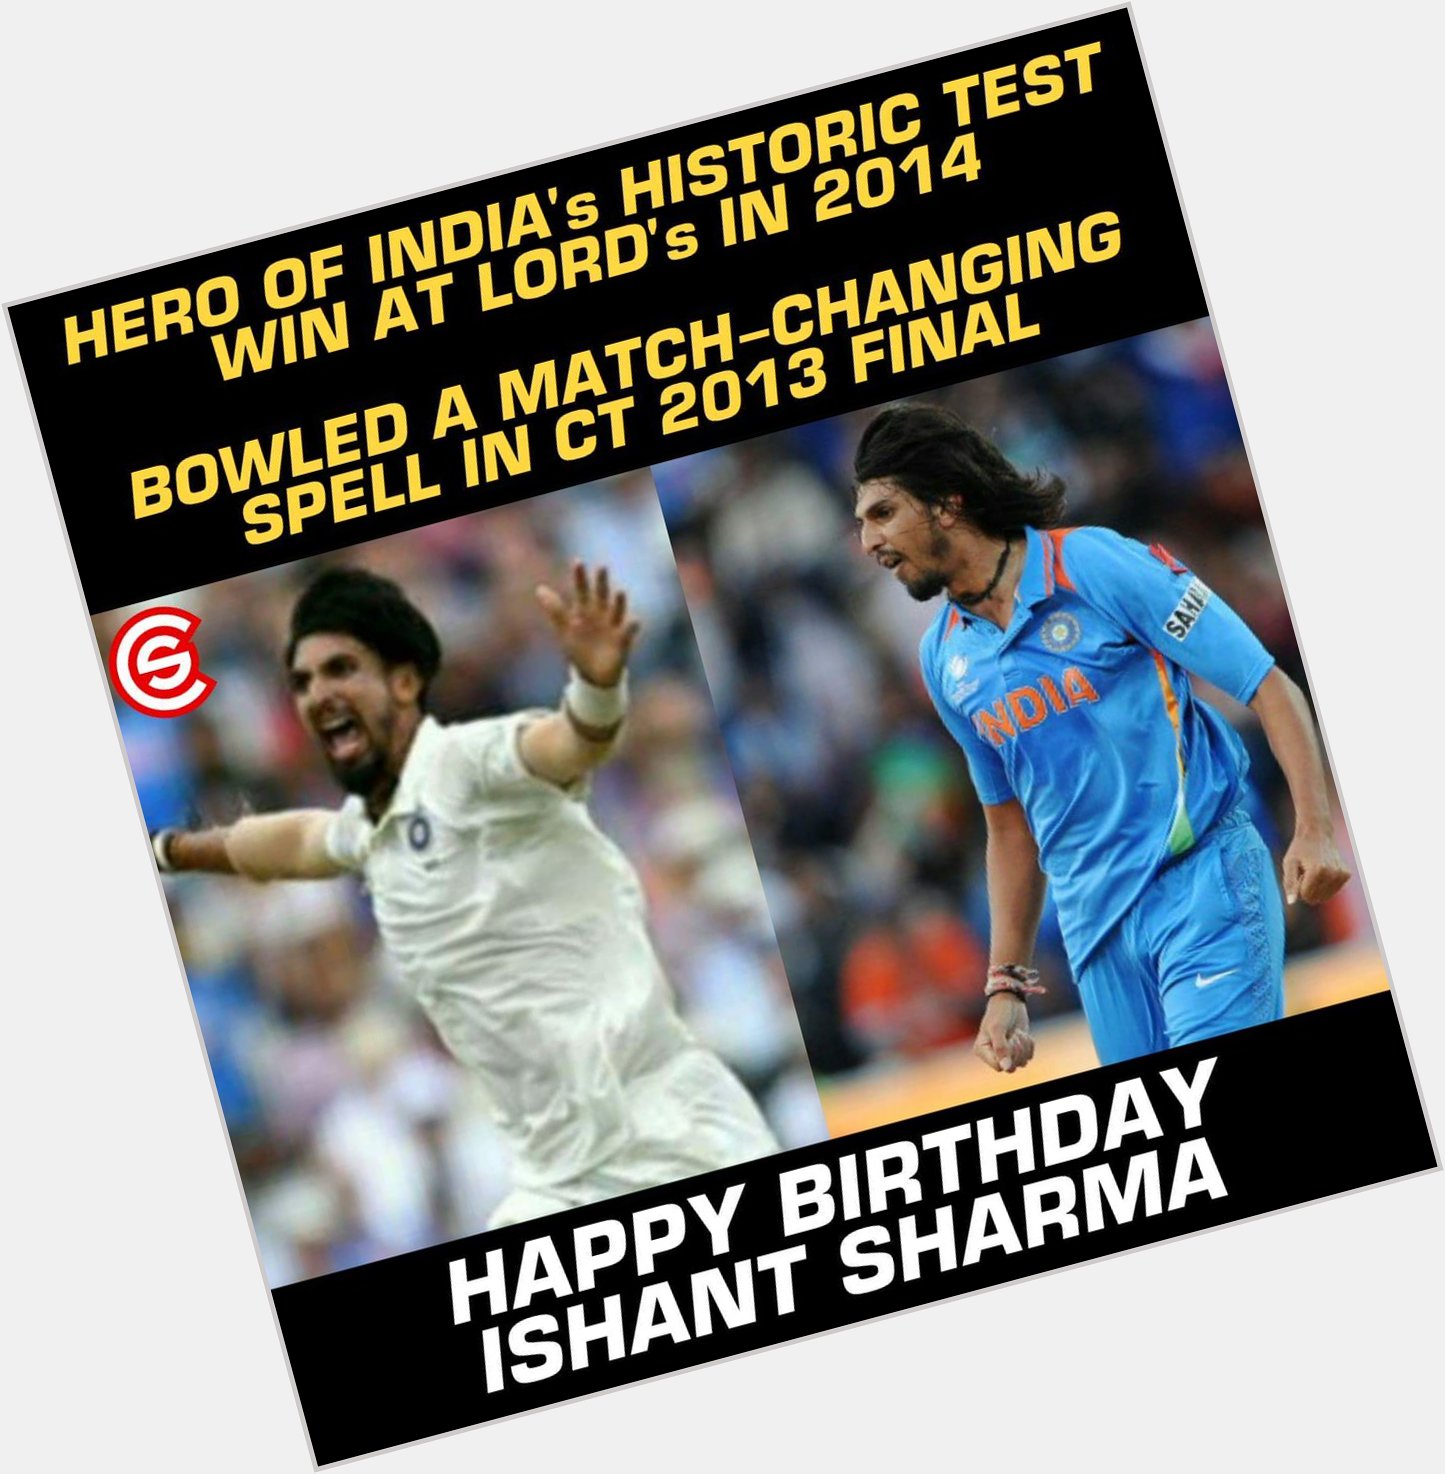 Happy Birthday, Ishant Sharma!! 